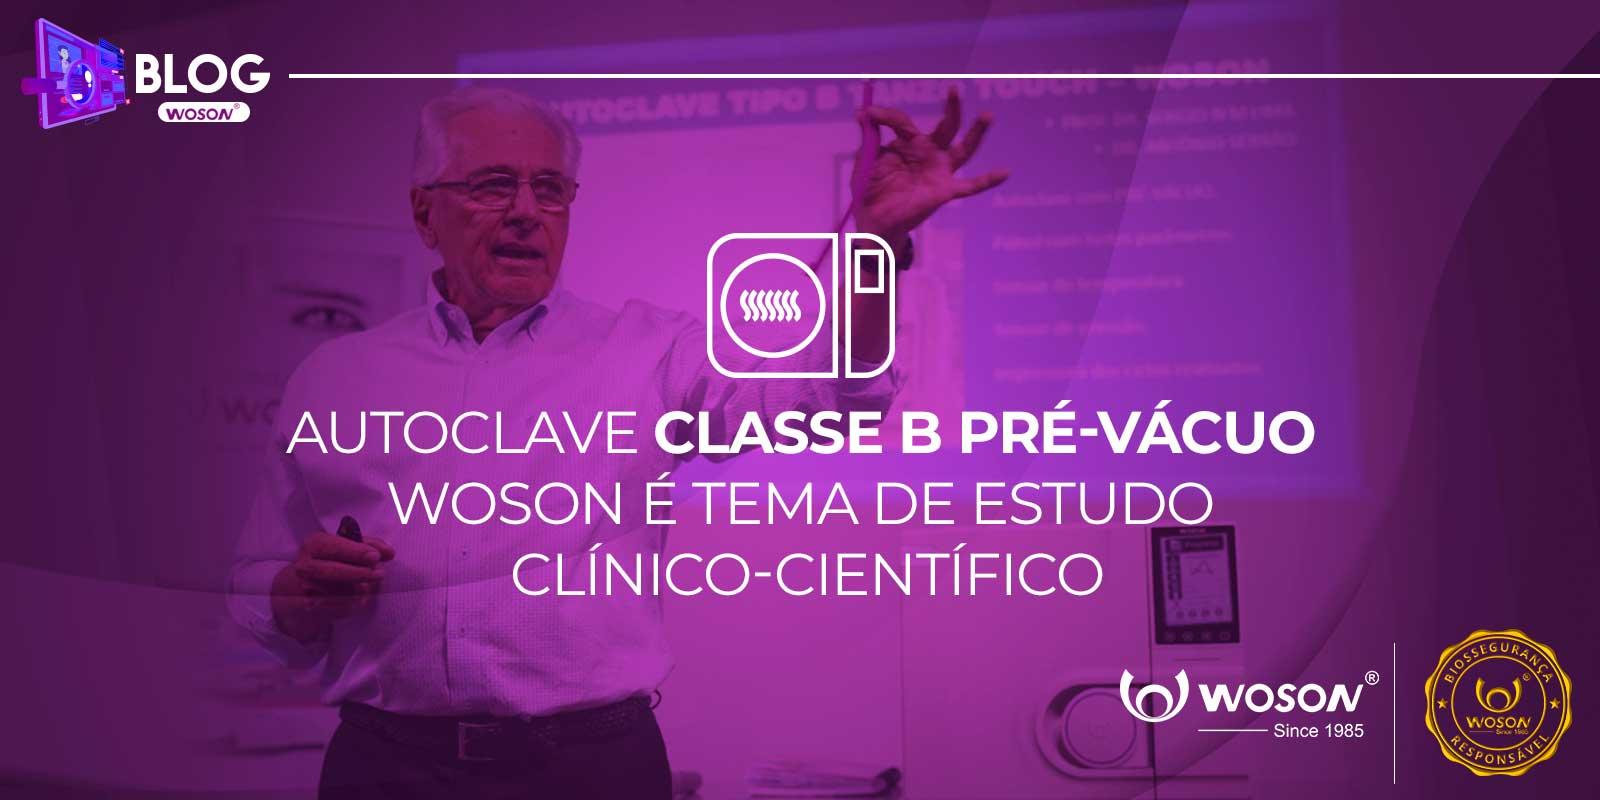 AUTOCLAVE CLASSE B PRÉ-VÁCUO WOSON É TEMA DE ESTUDO CLÍNICO-CIENTÍFICO